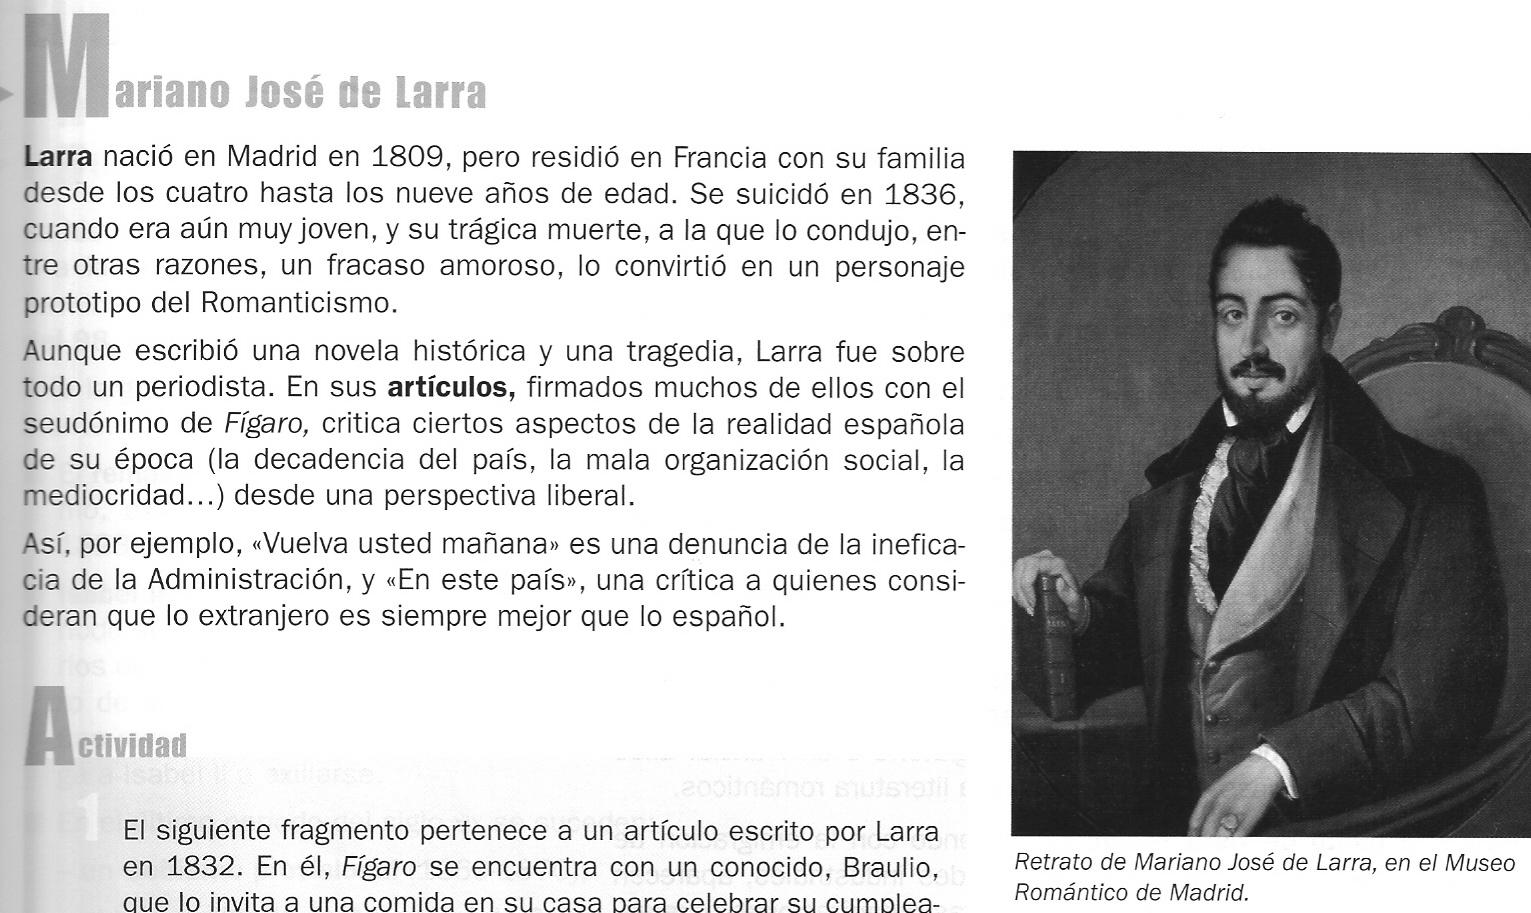 6 El siguiente fragmento pertenece a un artículo escrito por Larra en 1832. En él, Fígaro se encuentra a un conocido, Braulio, que lo invita a un banquete para celebrar su cumpleaños.